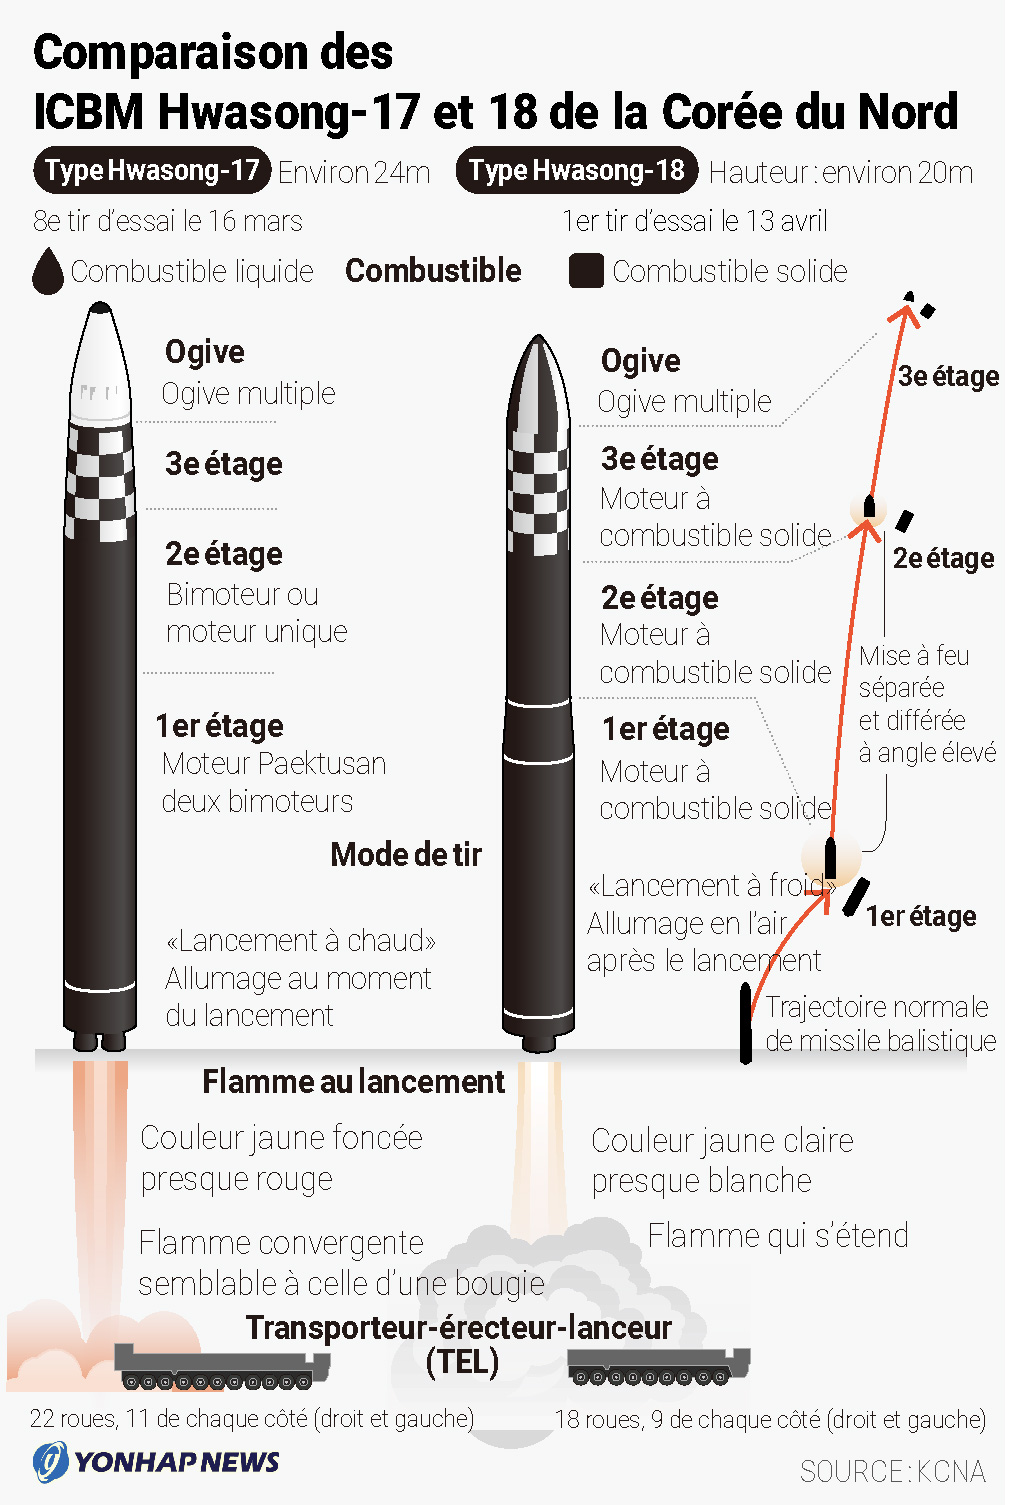 Comparaison des ICBM Hwasong-17 et 18 de la Corée du Nord